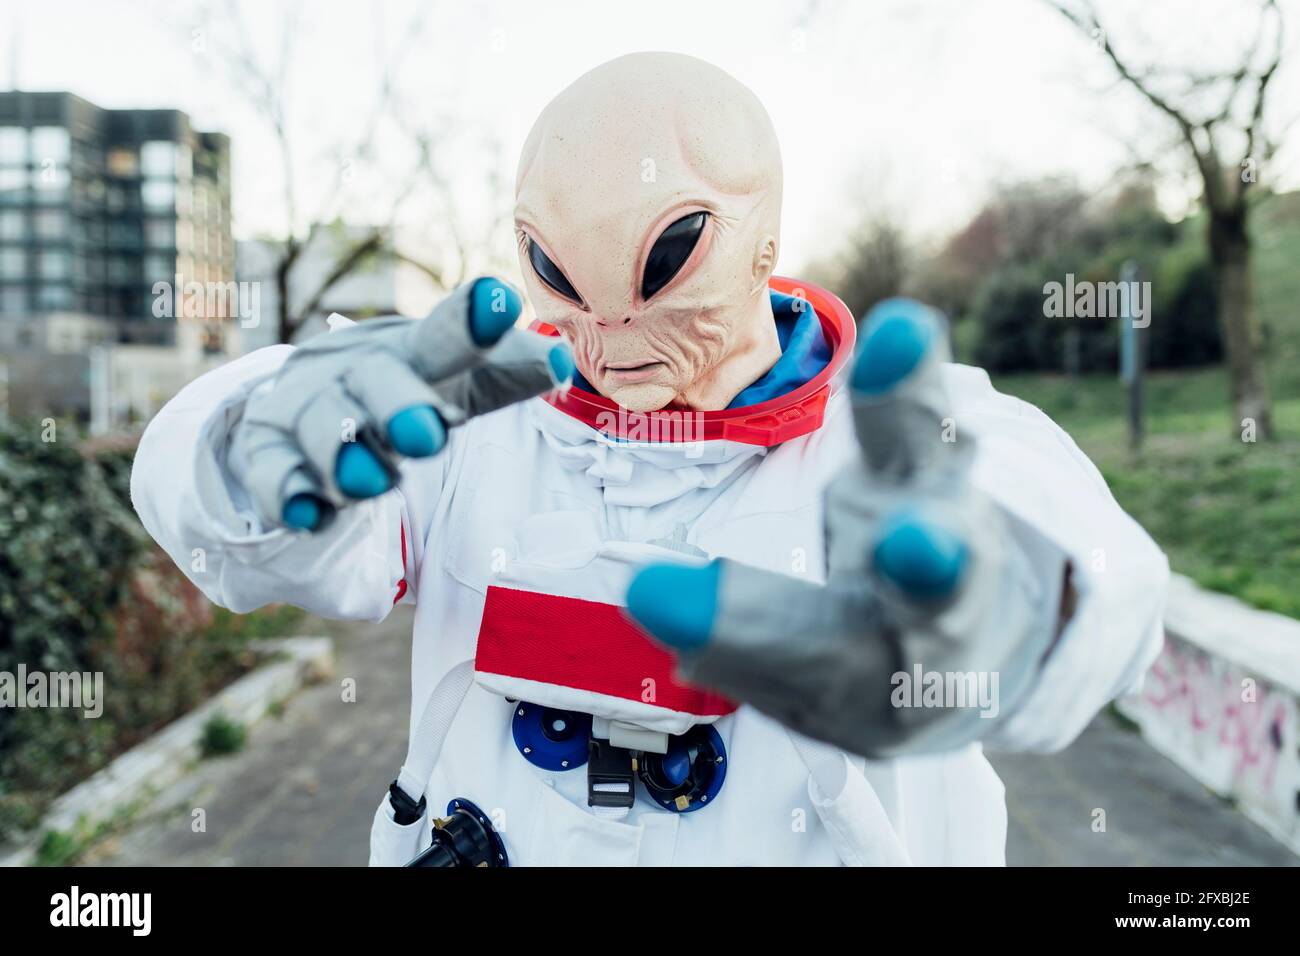 Weibliche Astronautin mit Alien-Maske, die im Freien gestikelt Stockfoto